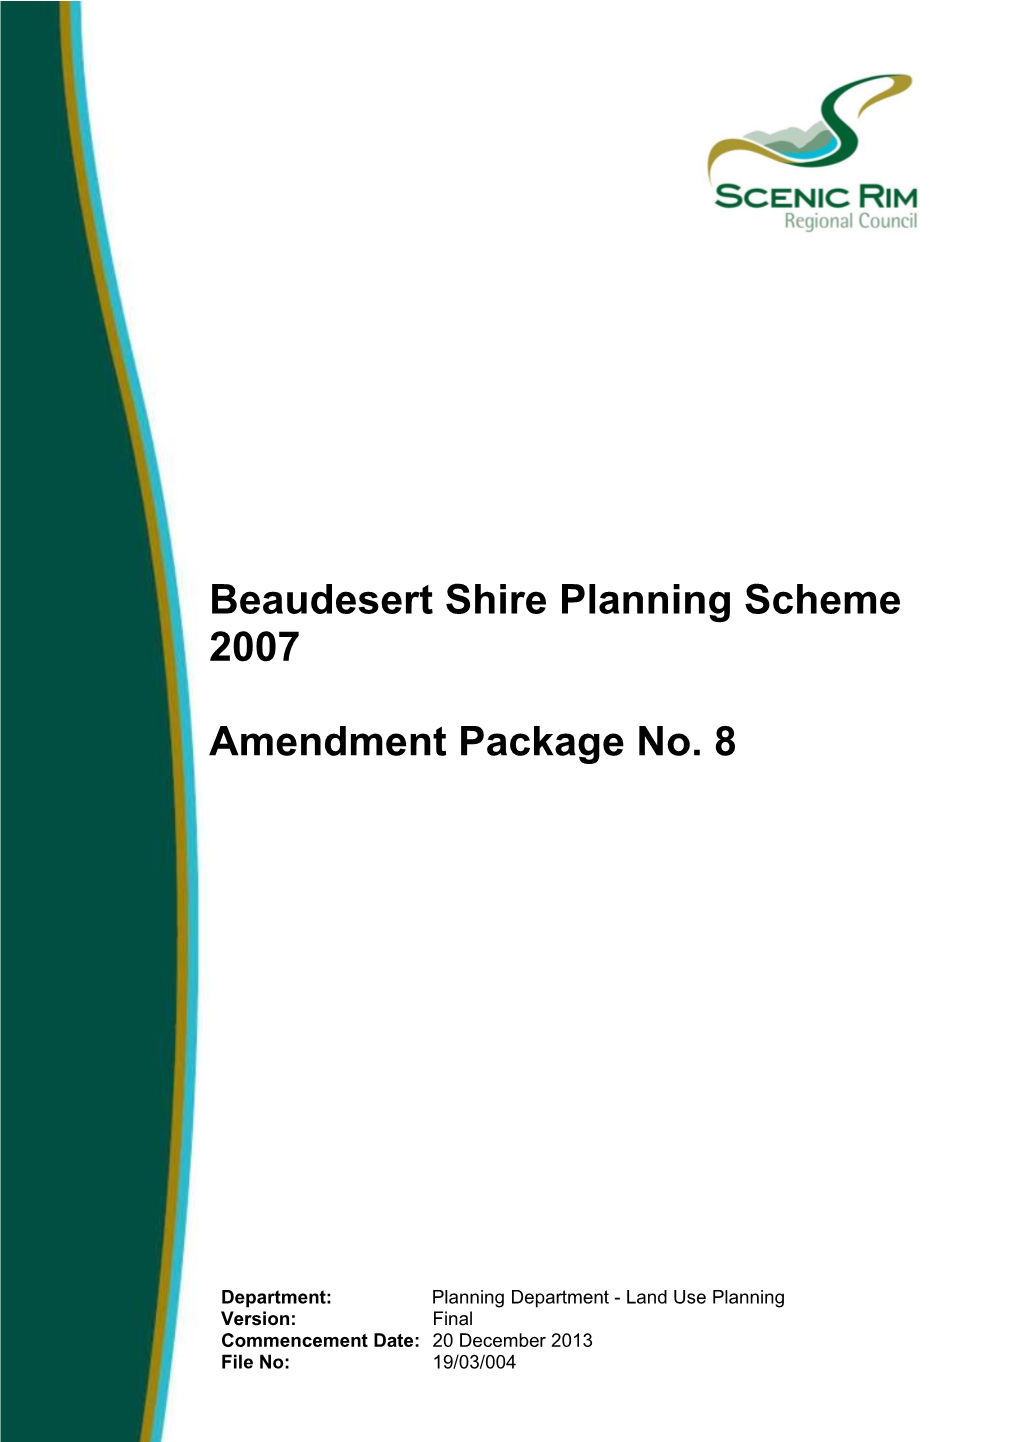 Beaudesert Shire Planning Scheme 2007 Amendment Package No. 8